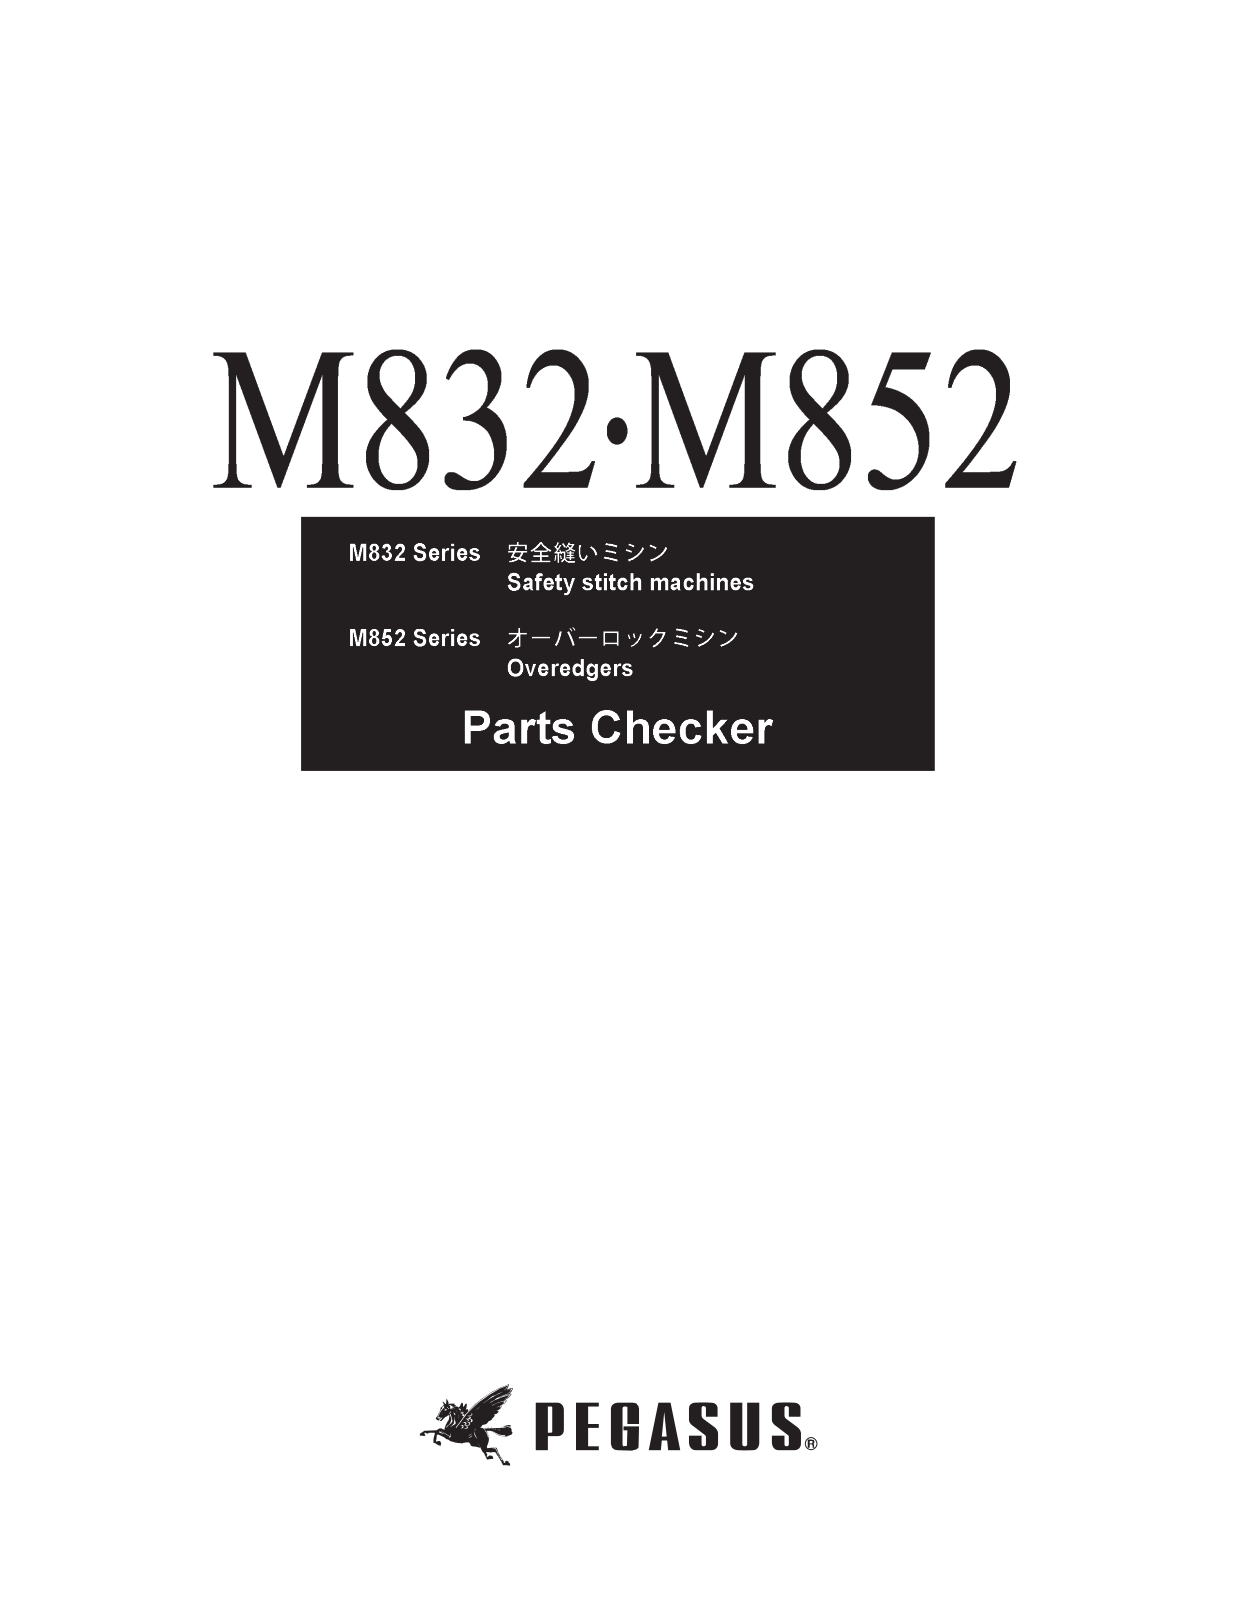 Pegasus M832, M852 Parts List